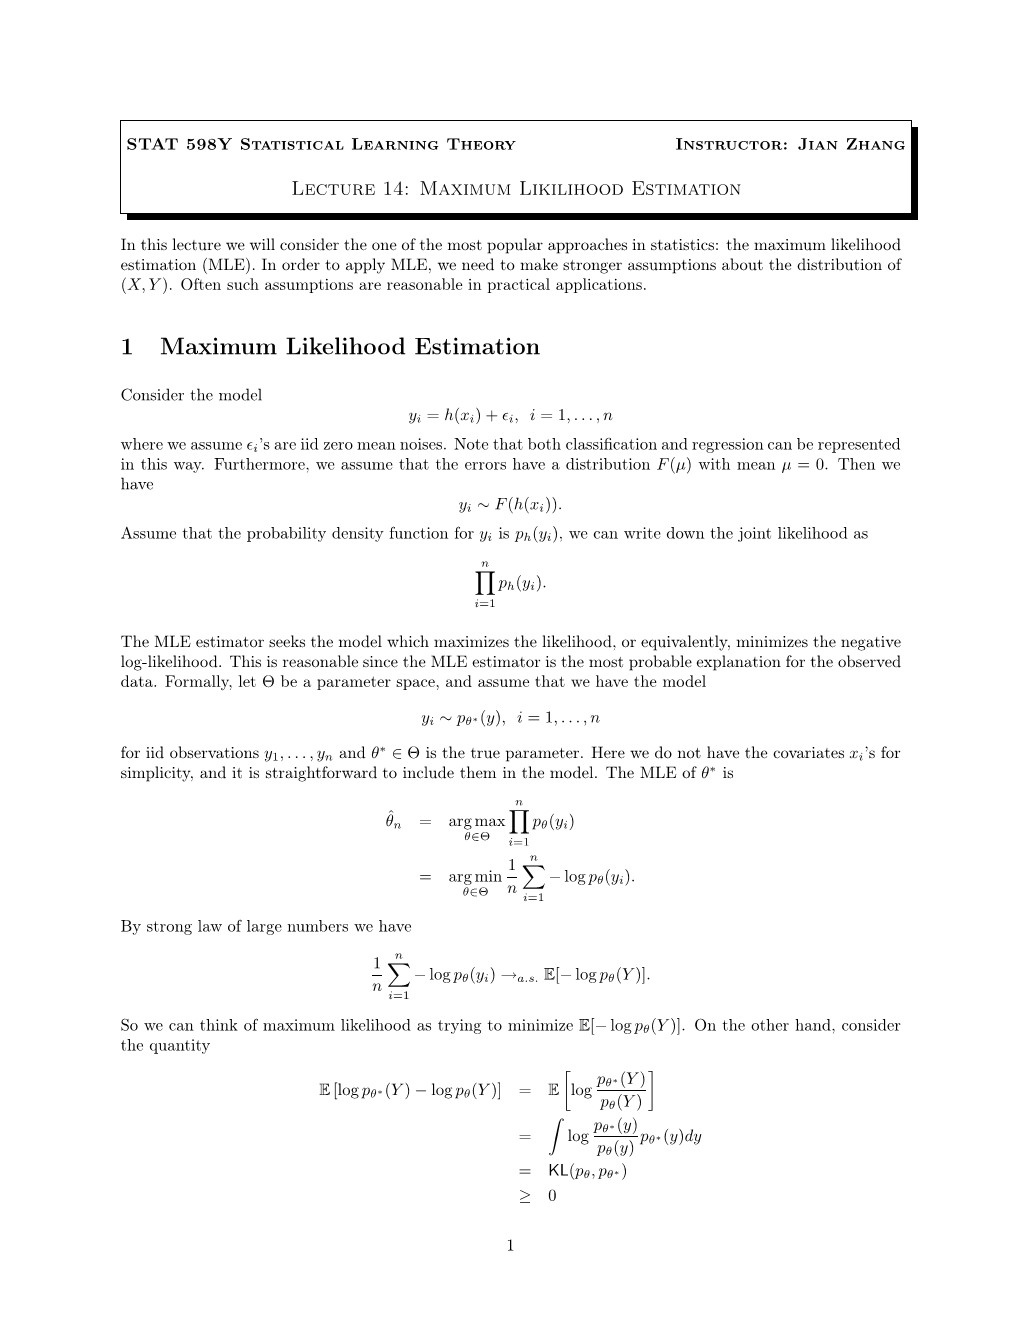 1 Maximum Likelihood Estimation